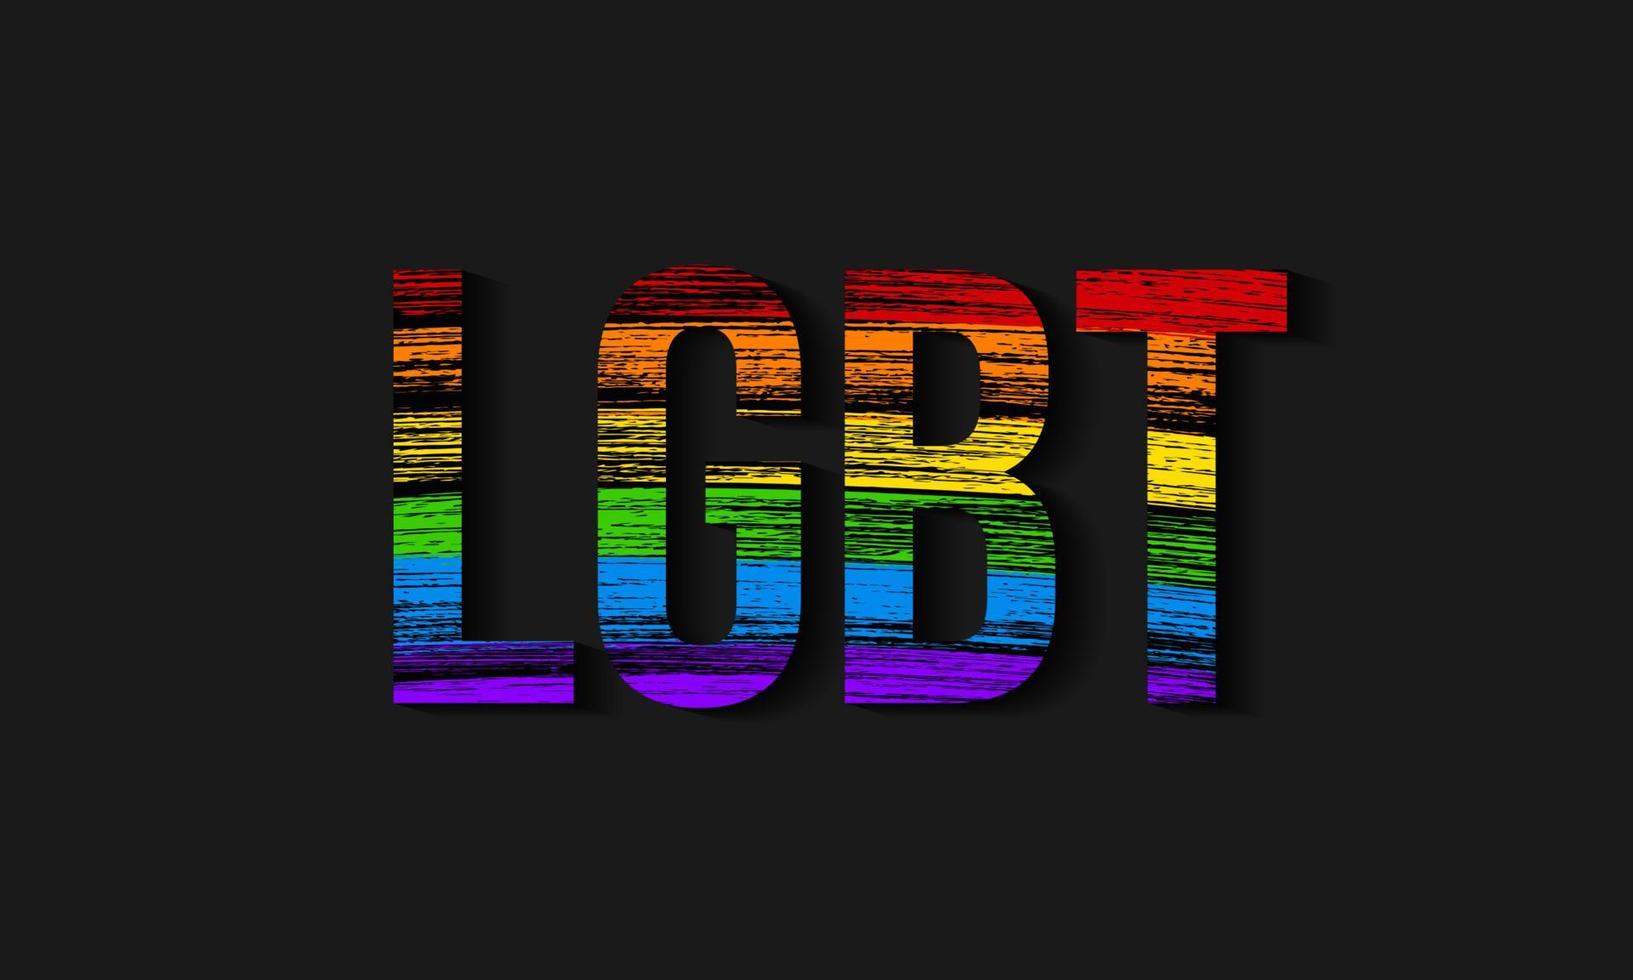 símbolo de los movimientos sociales lesbianas, del orgullo gay, bisexuales, transgénero. bandera de la comunidad lgbt. trazos de lápiz texturizan los colores del arco iris. plantilla de diseño vectorial fácil de editar. vector